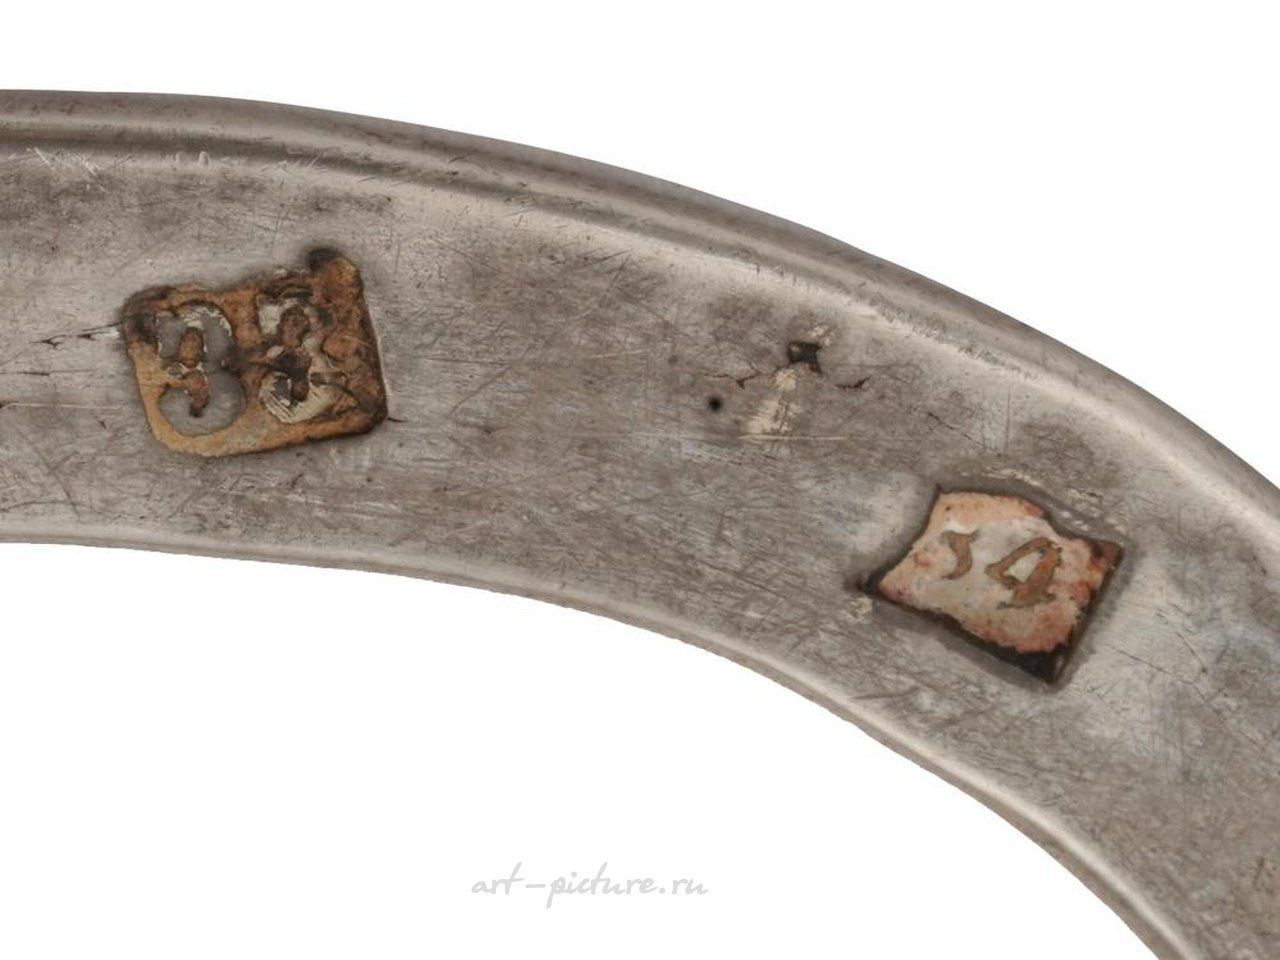 Русское серебро , Сервировочный поднос из русского императорского серебра овальной формы